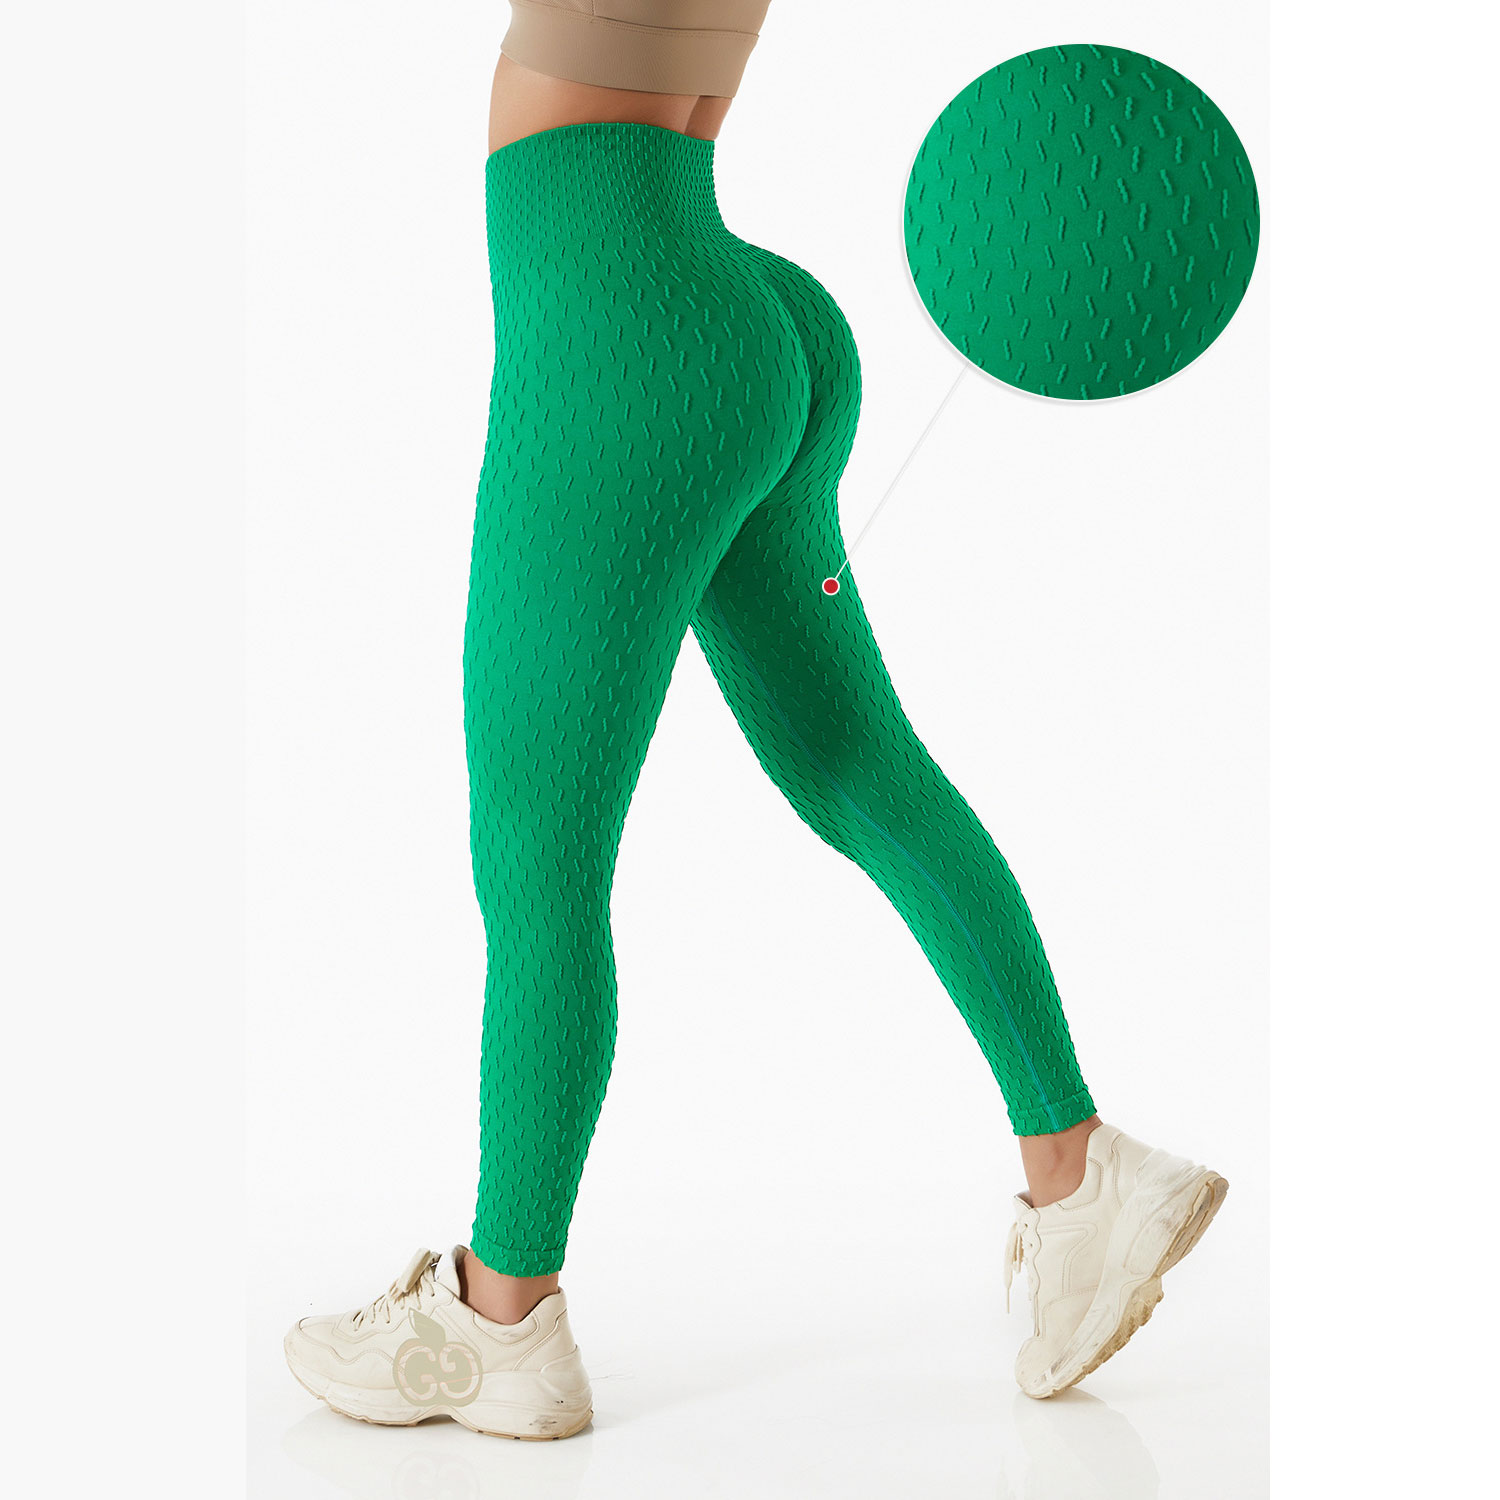 Pantalon de sport à tissage jacquard 3D pour l'entraînement Image présentée